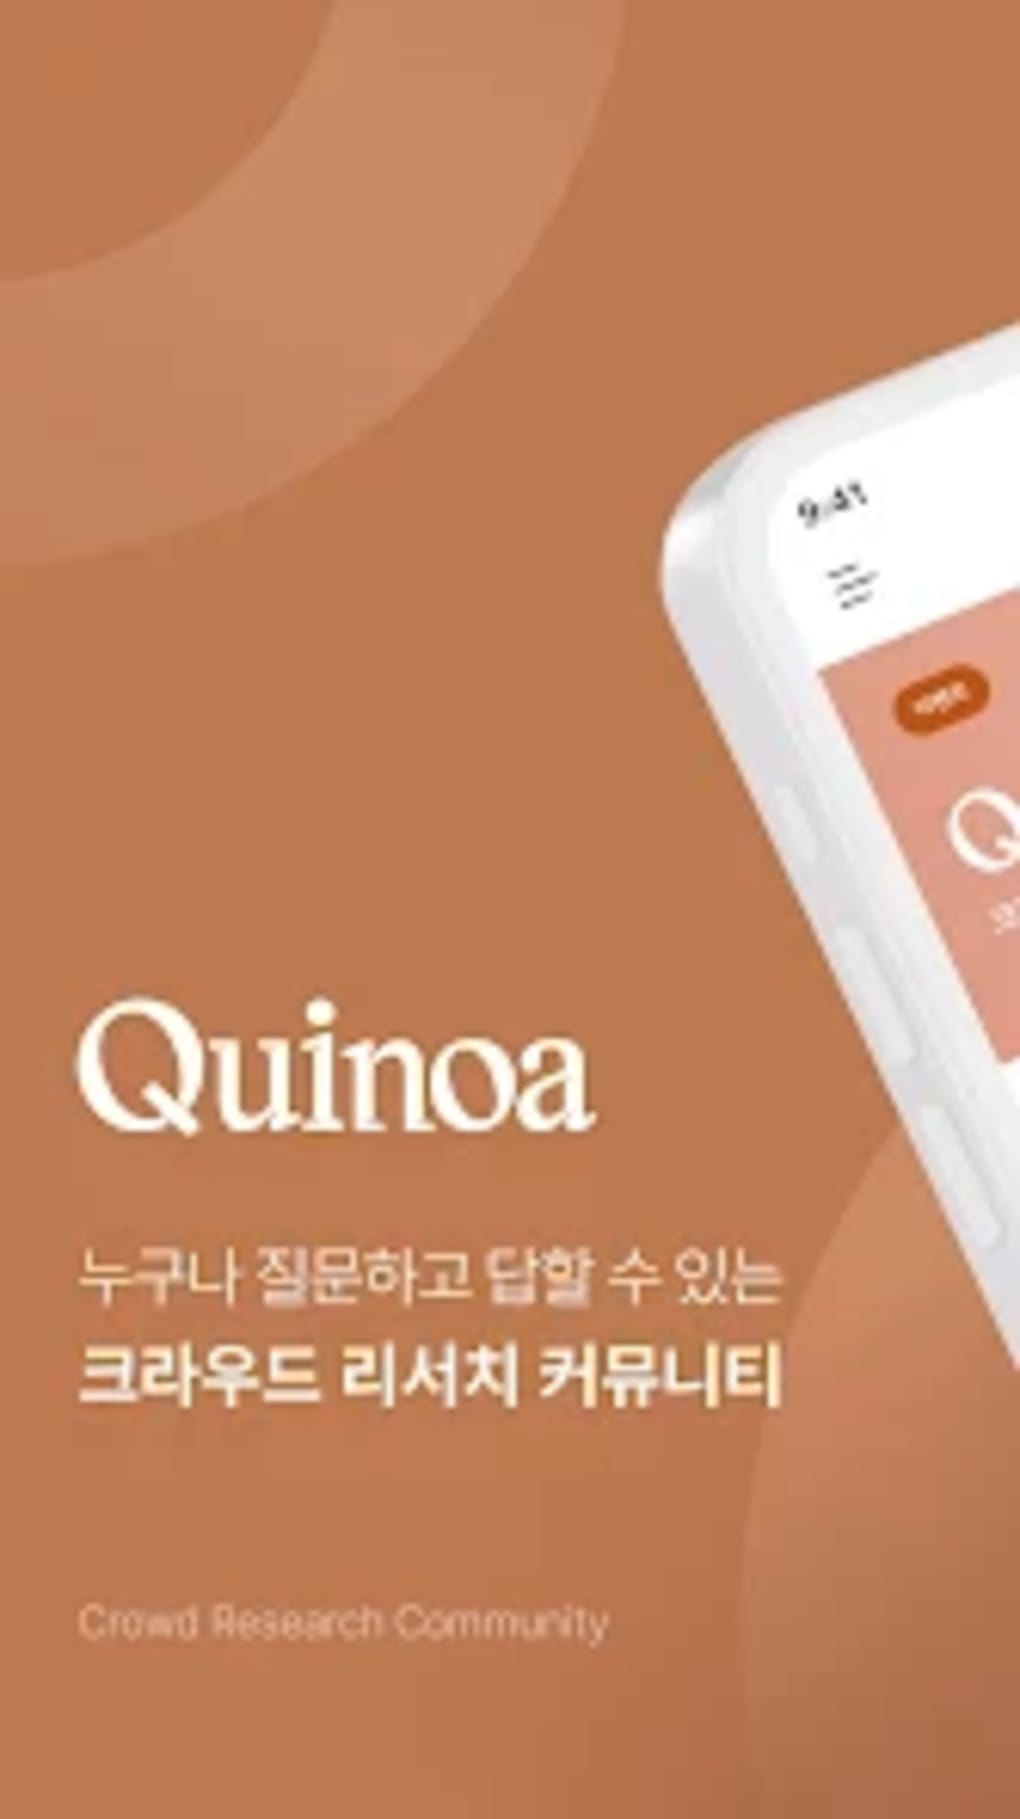 퀴노아 Quinoa - 크라우드 리서치 커뮤니티 para Android - Download